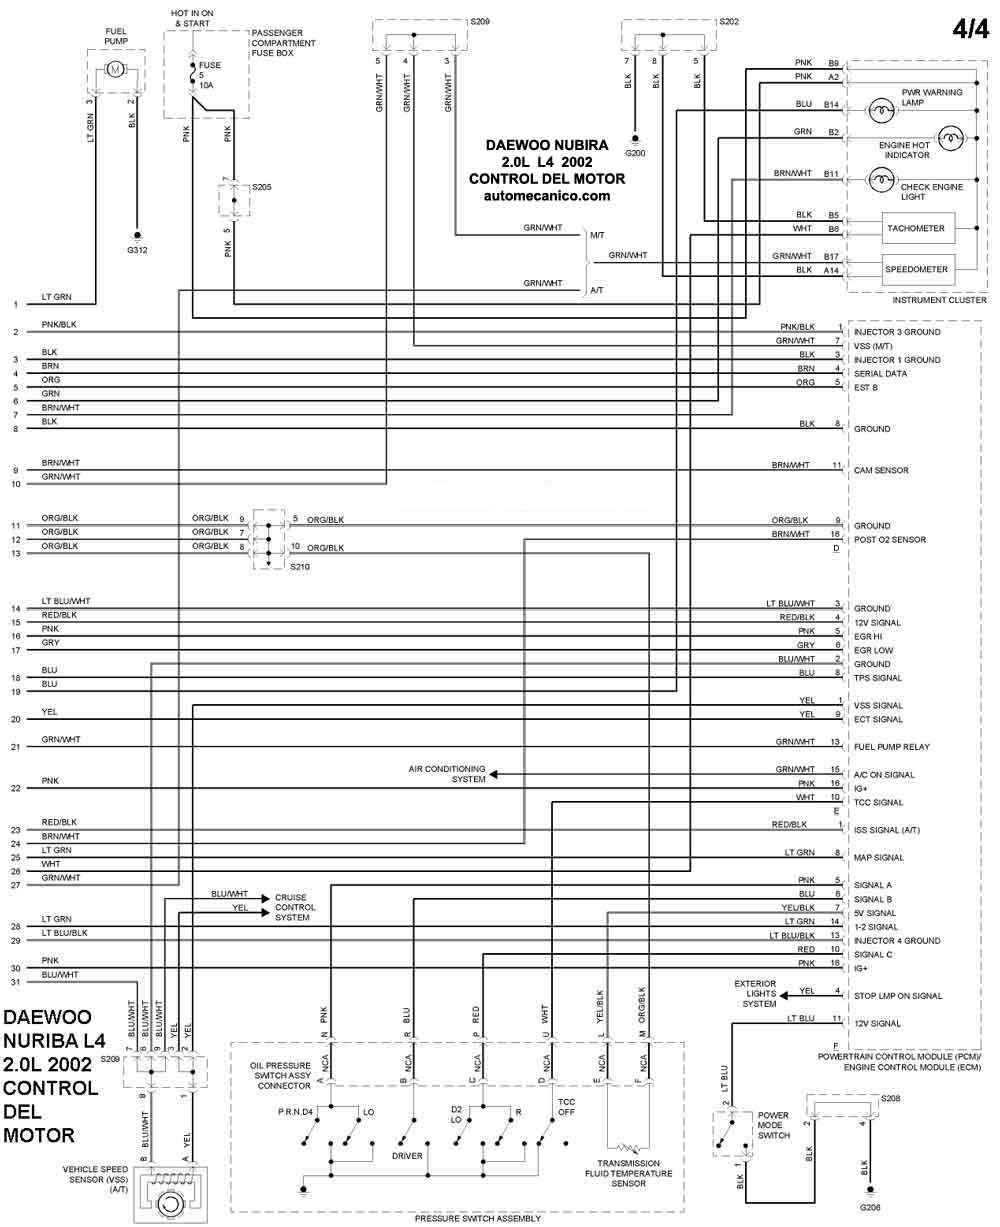 DAEWOO - Diagramas control del motor 2002 - Graphics - Esquemas | Vehiculos  - Motores - Componentes | Mecanica automotriz